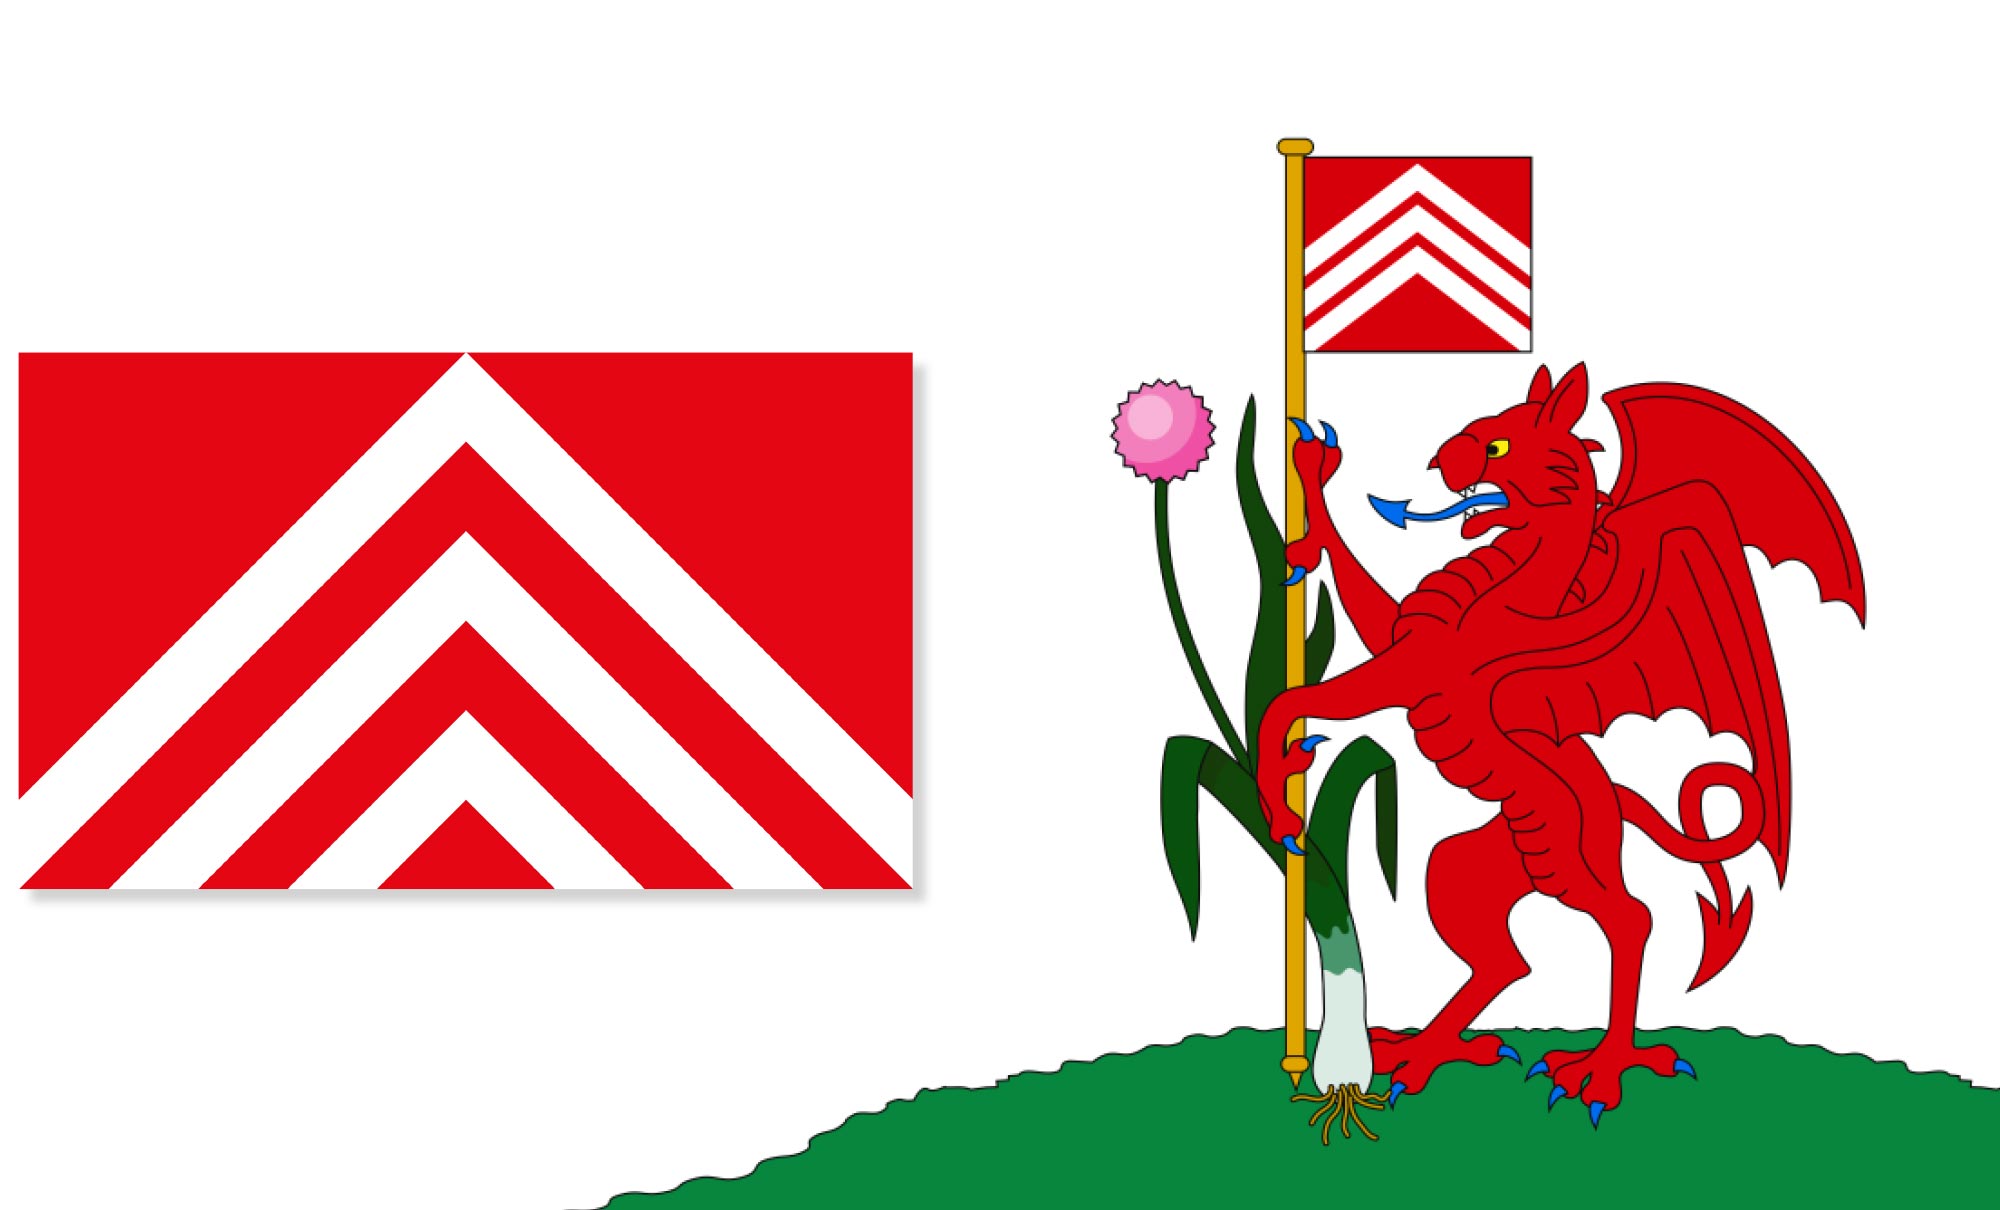 cardiff flag design wales chevron caerdydd 